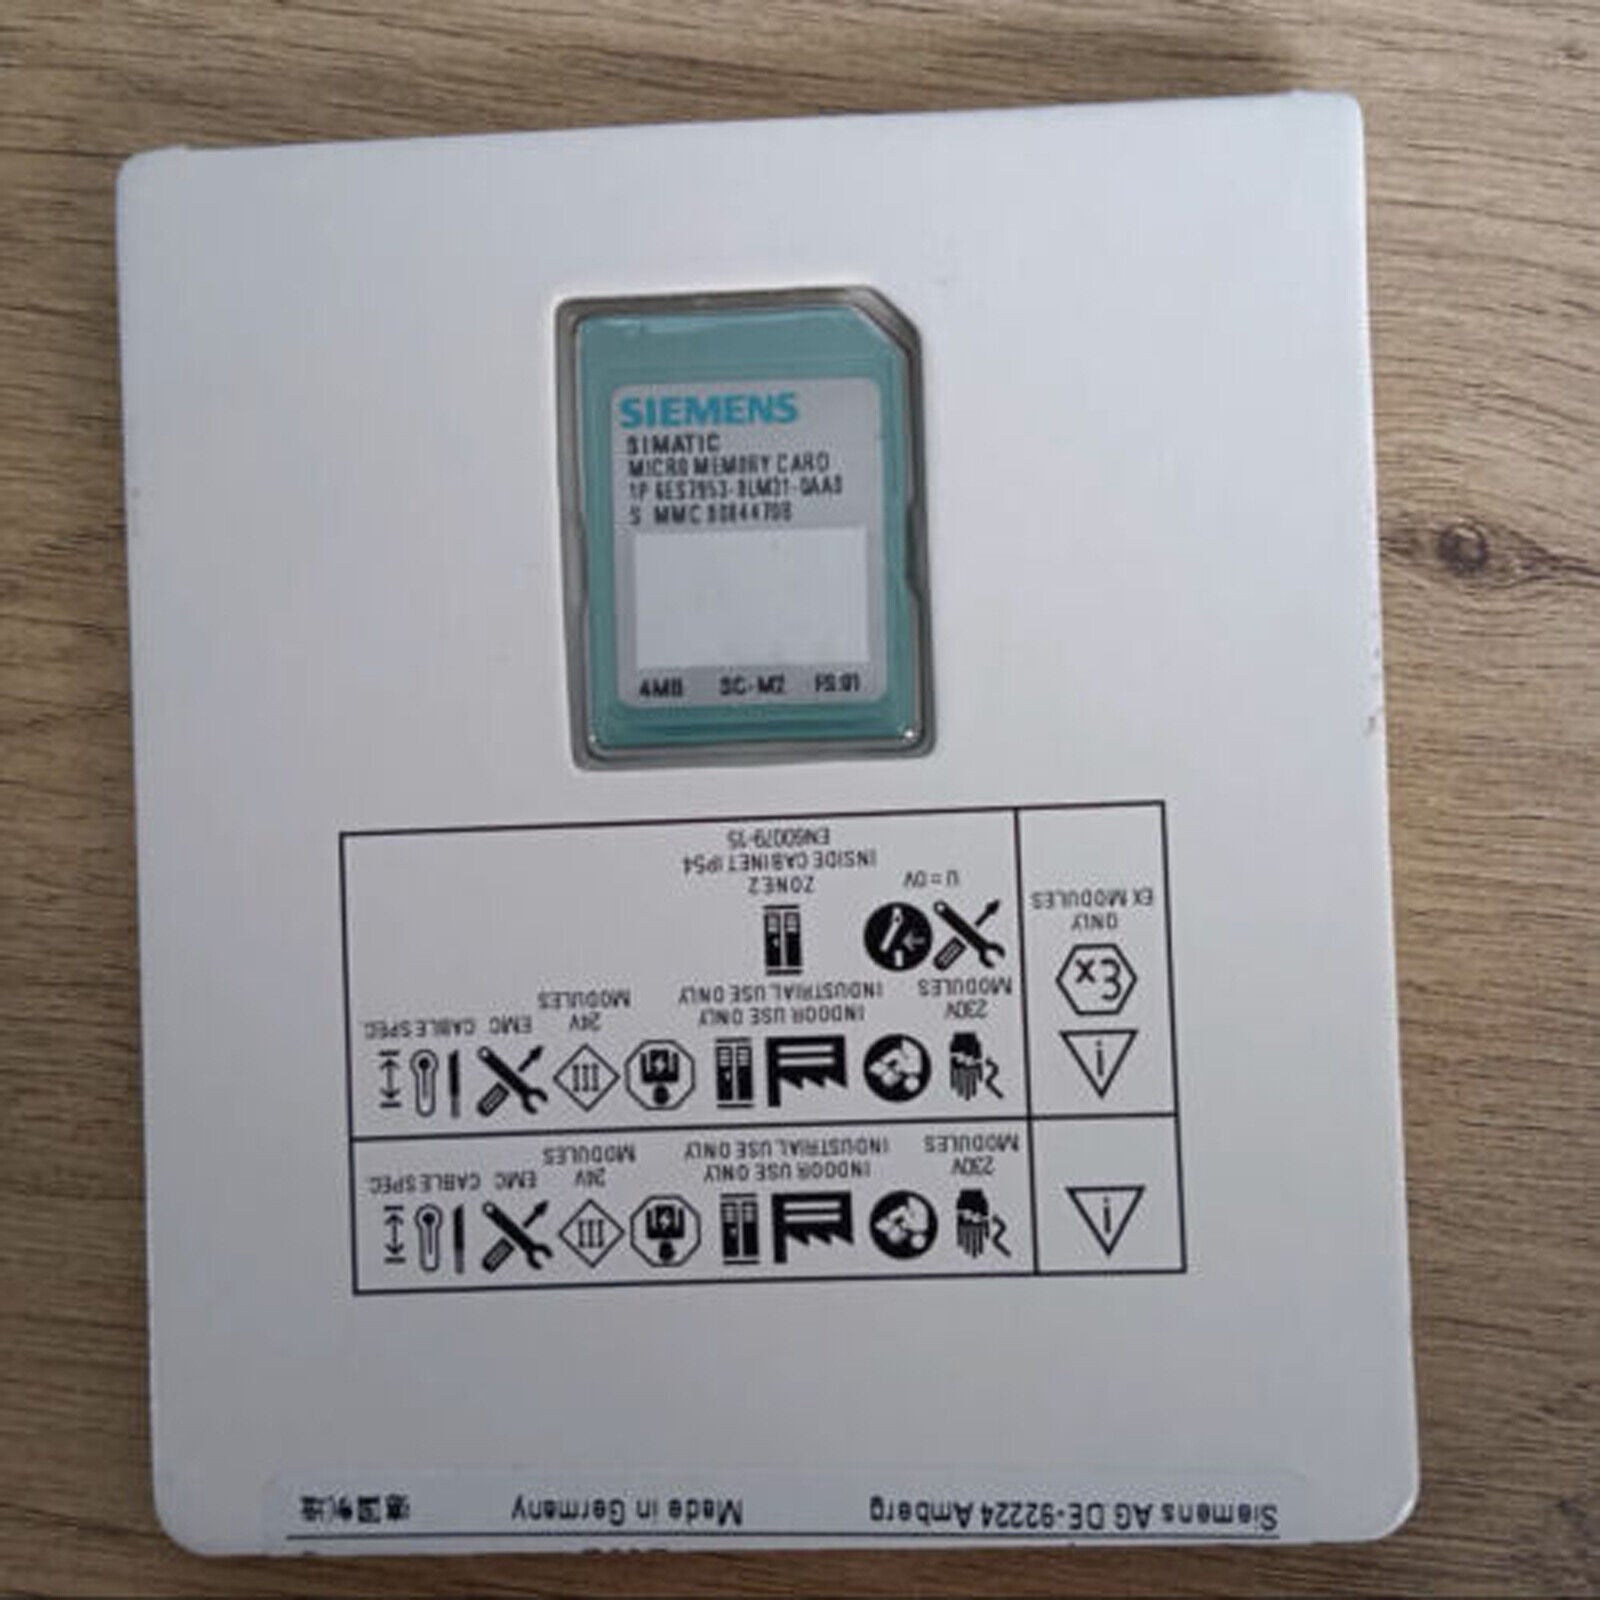 new  Siemens Simatic S7-300 Memory Card 4MB 6ES7953 6ES7 953-8LM31-0AA0